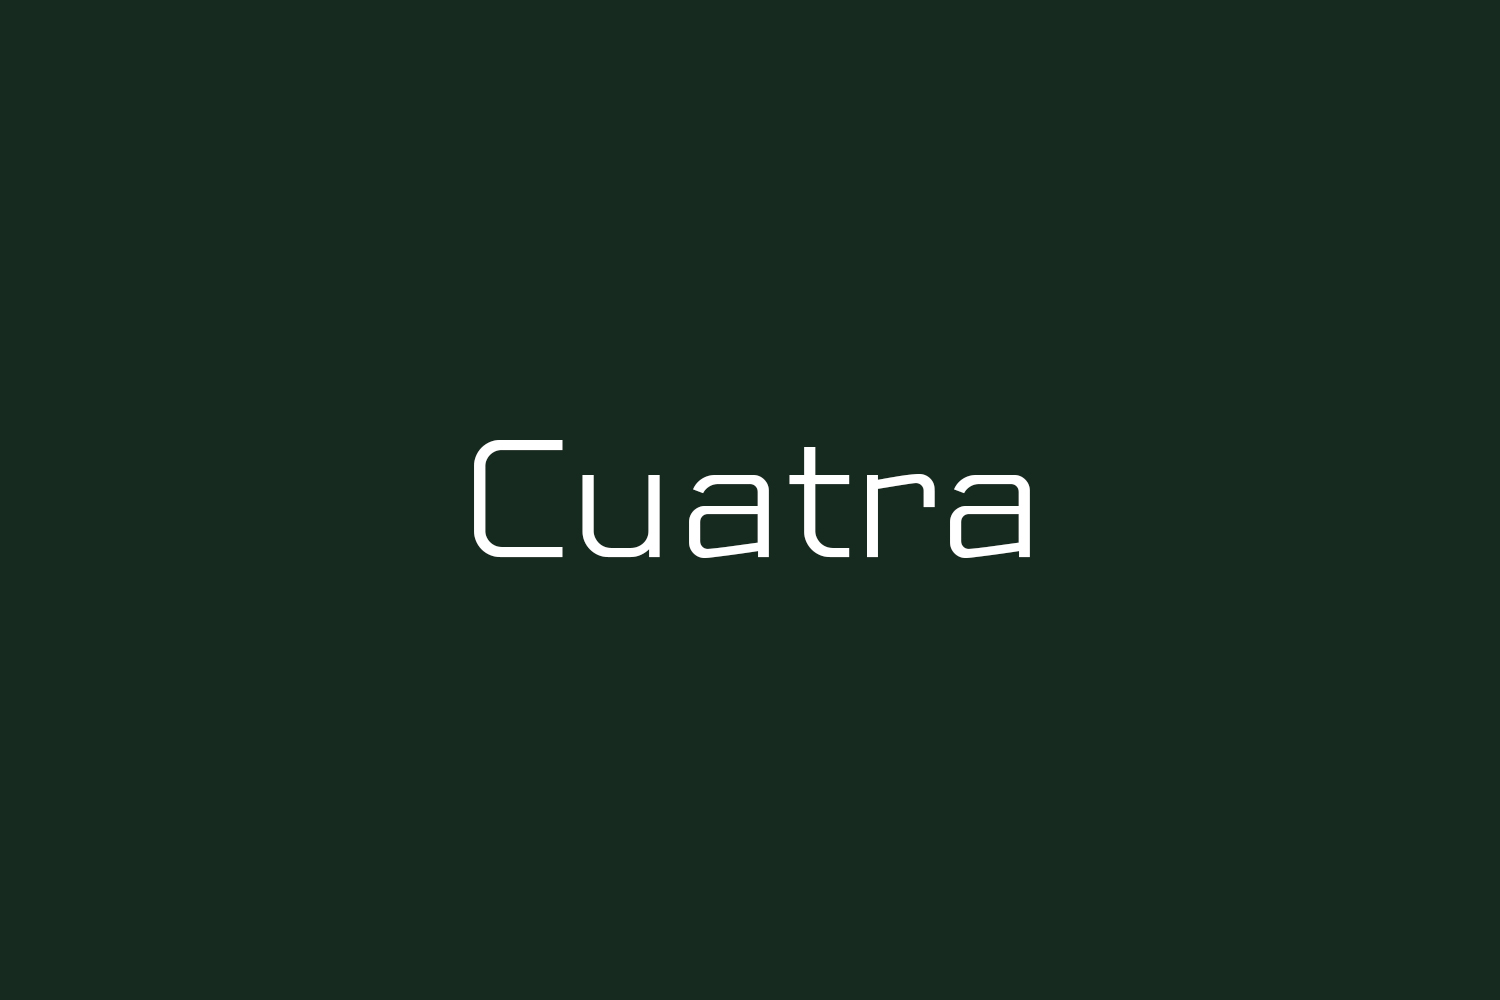 Cuatra Free Font